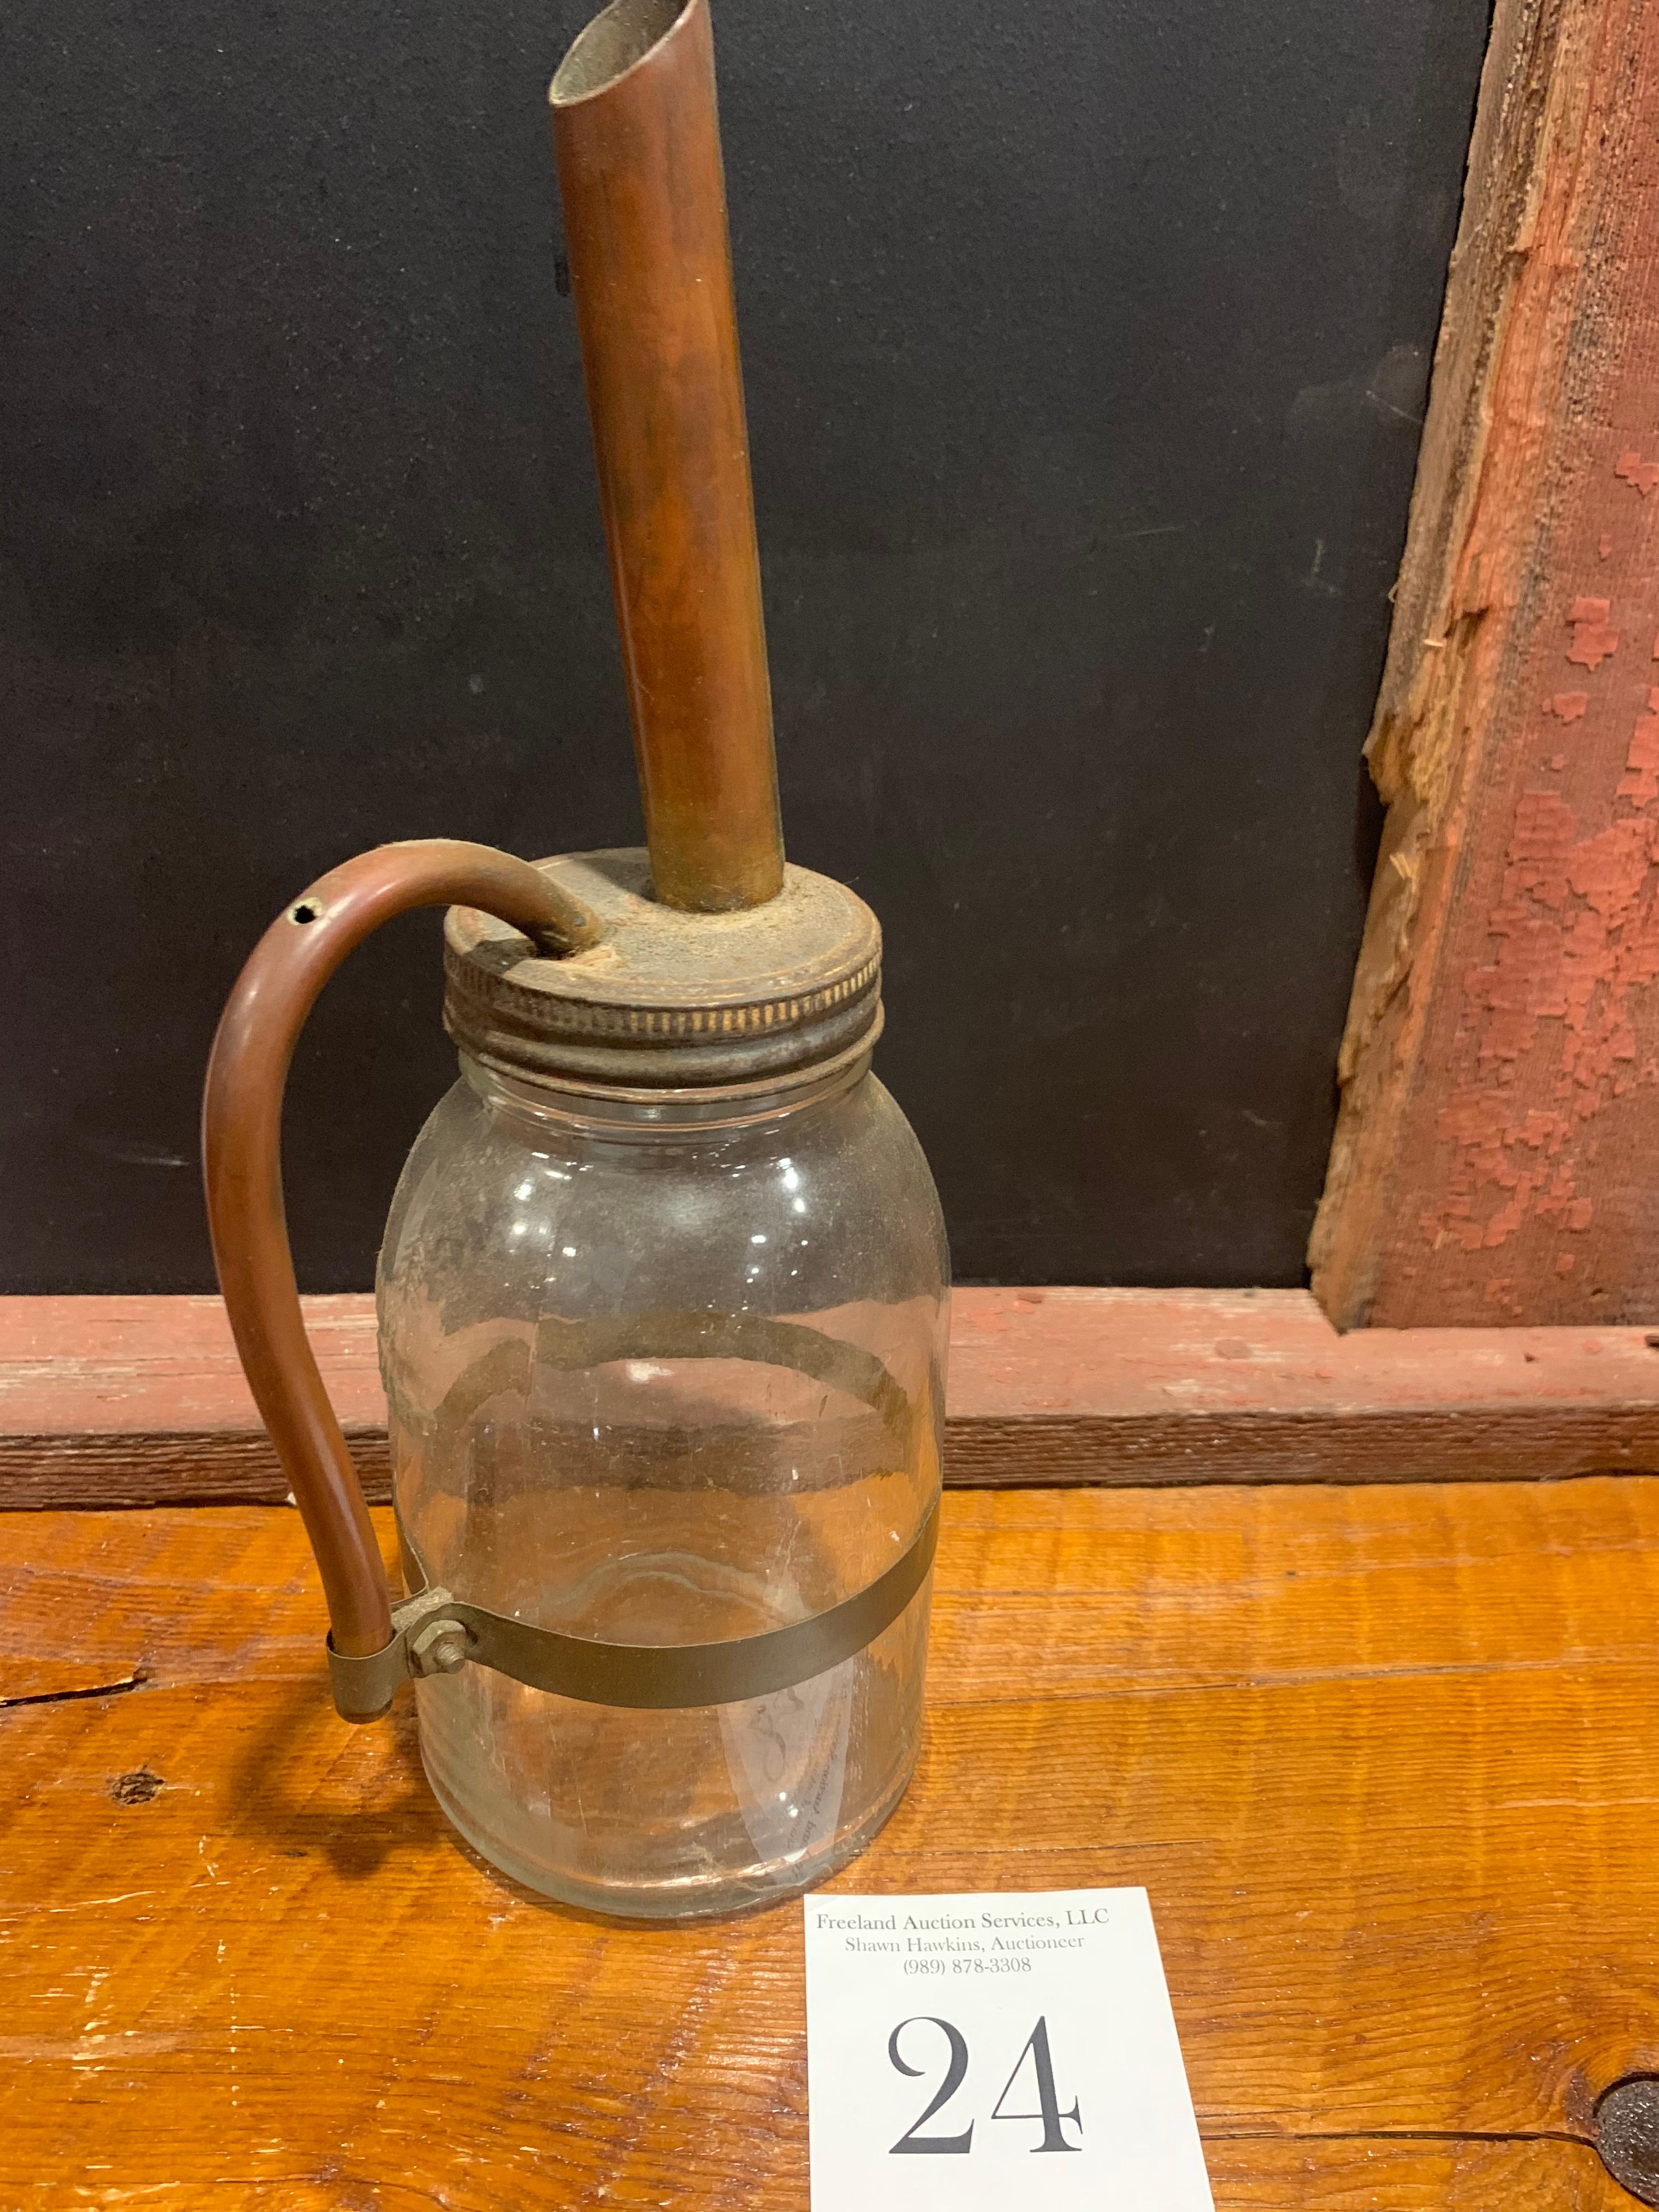 Antique Primitive Glass Oil Bottle With Unusual Copper Spout/pouring Handle